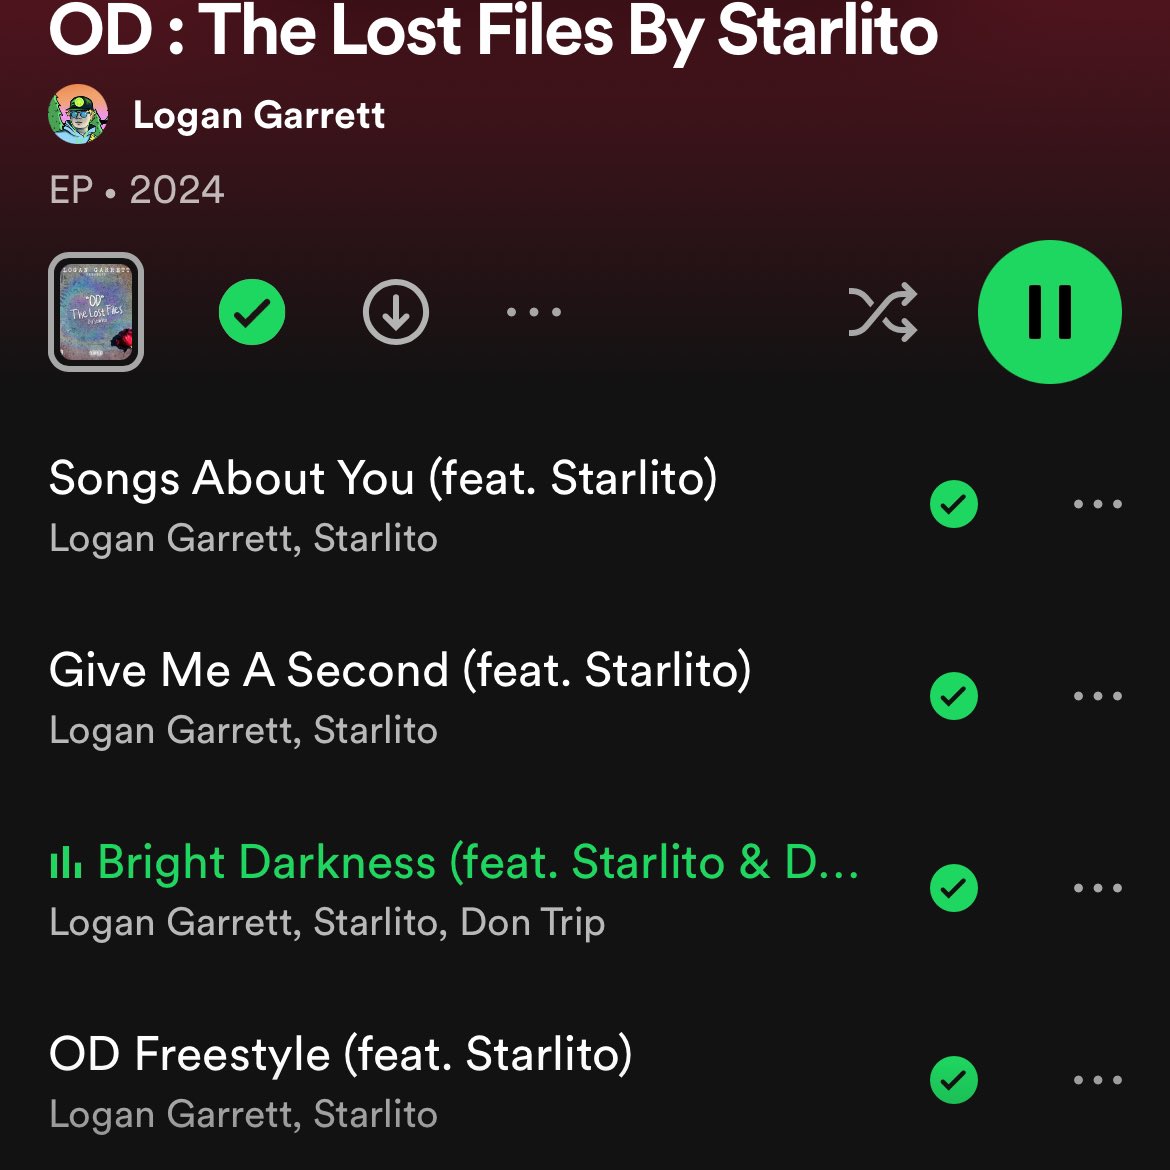 New EP from Logan Garrett “OD” The Lost Files By Starlito